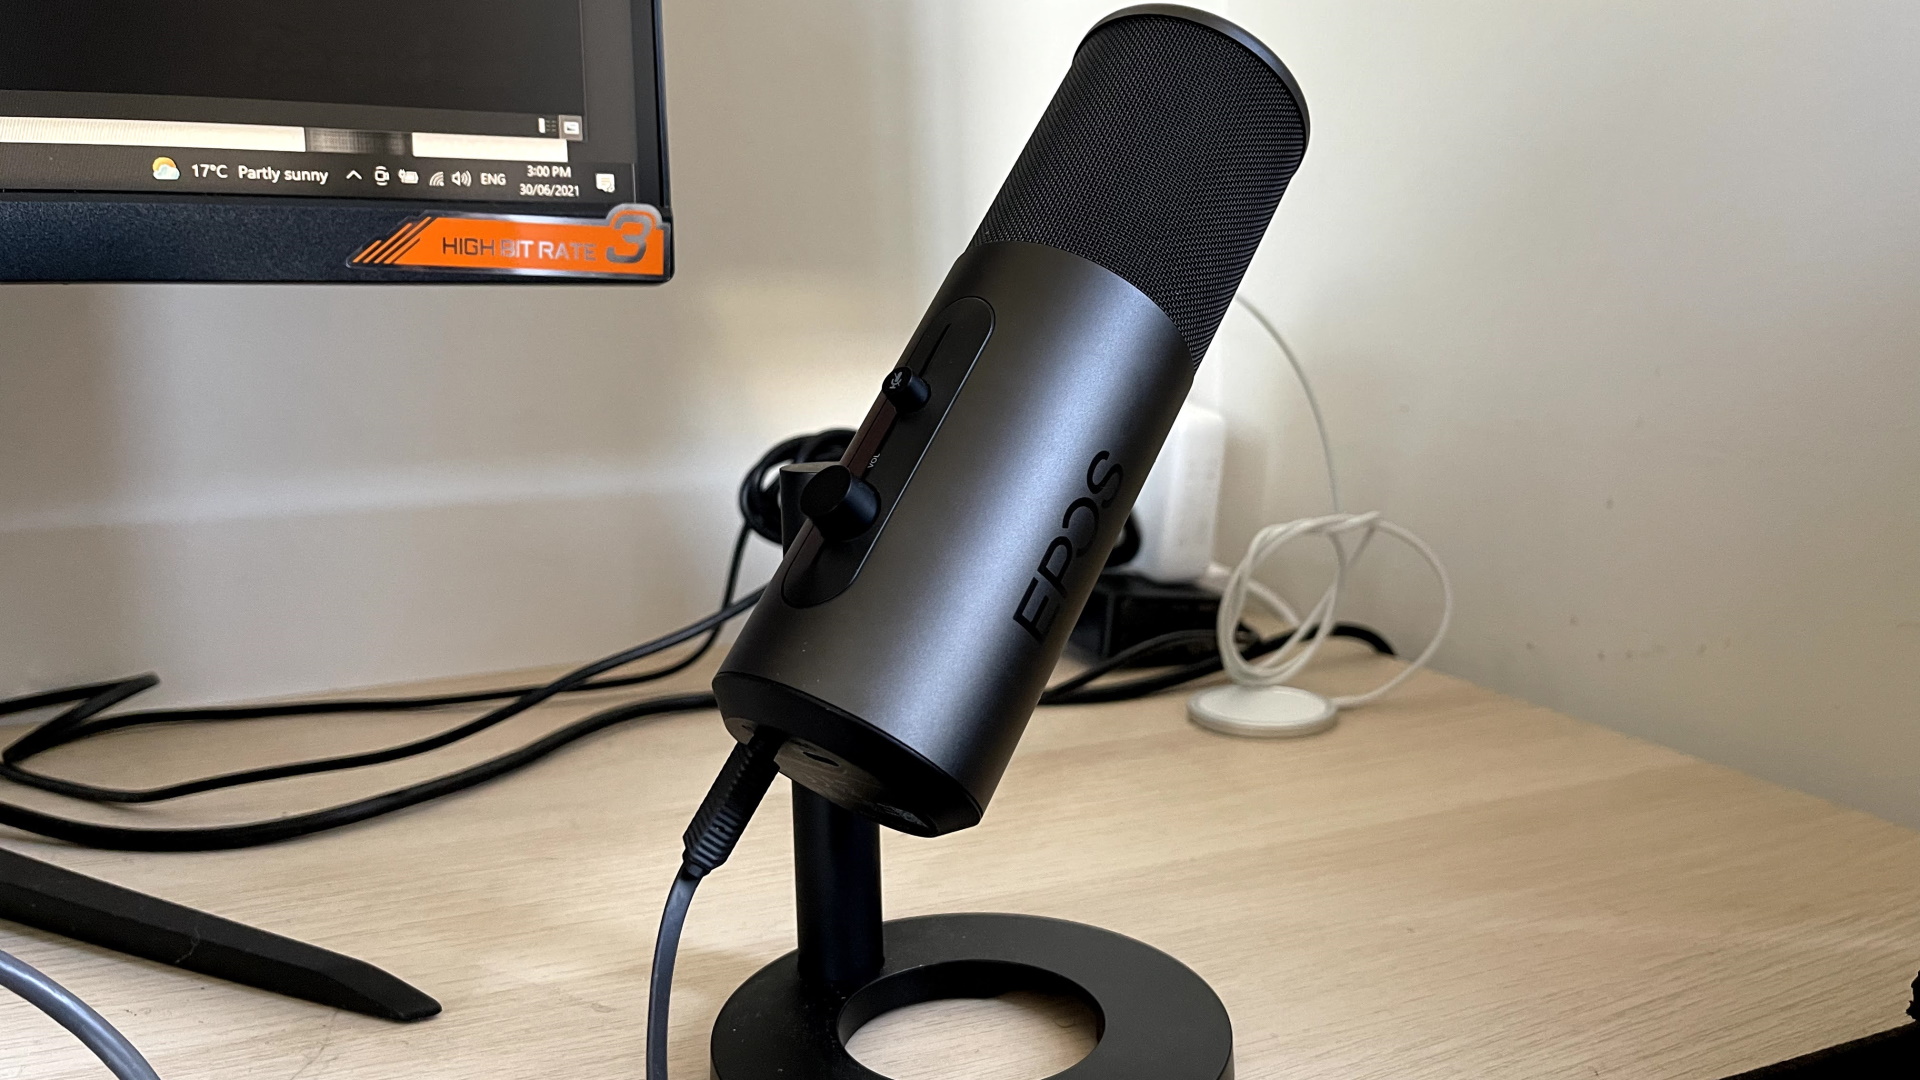 Probamos el micrófono EPOS B20 y Auriculares EPOS H6 Pro